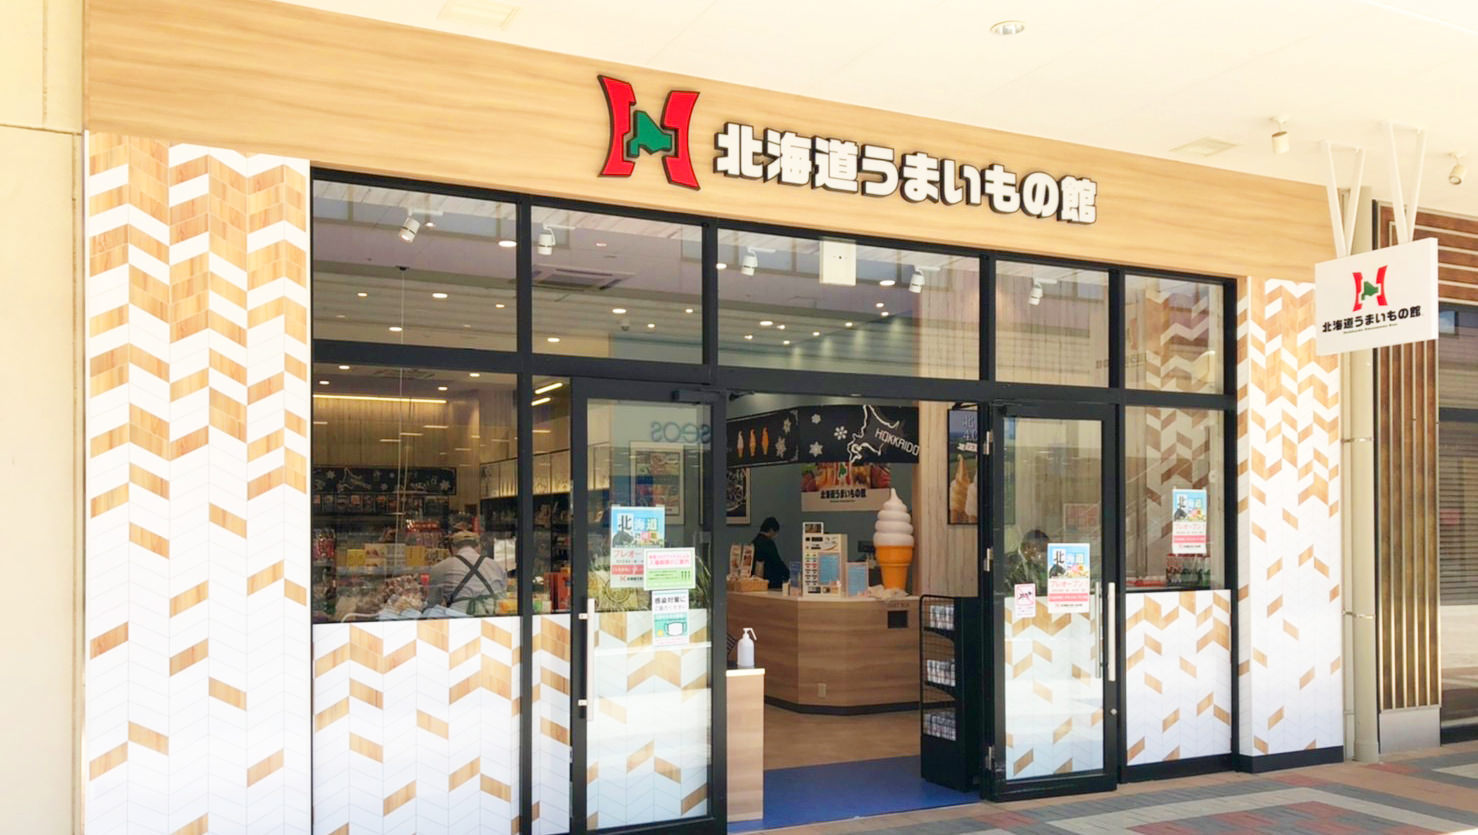 京都の酒造メーカーと祇園の料理店2店舗が初めてのコラボ　
父の日に「自宅で祇園気分」が味わえるギフトを
6月3日より予約開始